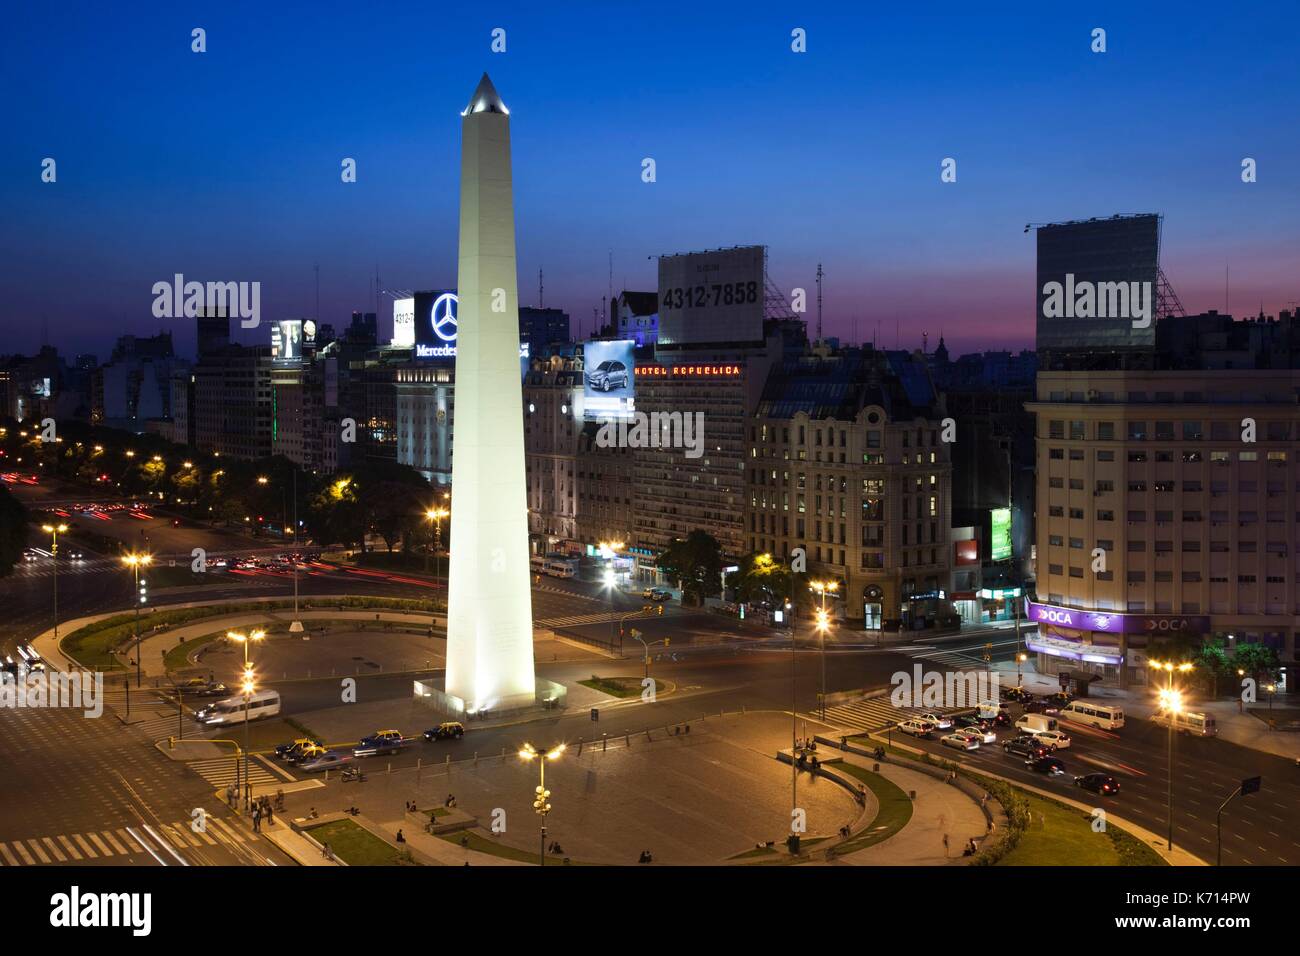 Argentina, Buenos Aires, El Obelisko, Plaza de la Republica, y Avenida 9 de julio, el símbolo de la Argentina, por la noche Foto de stock